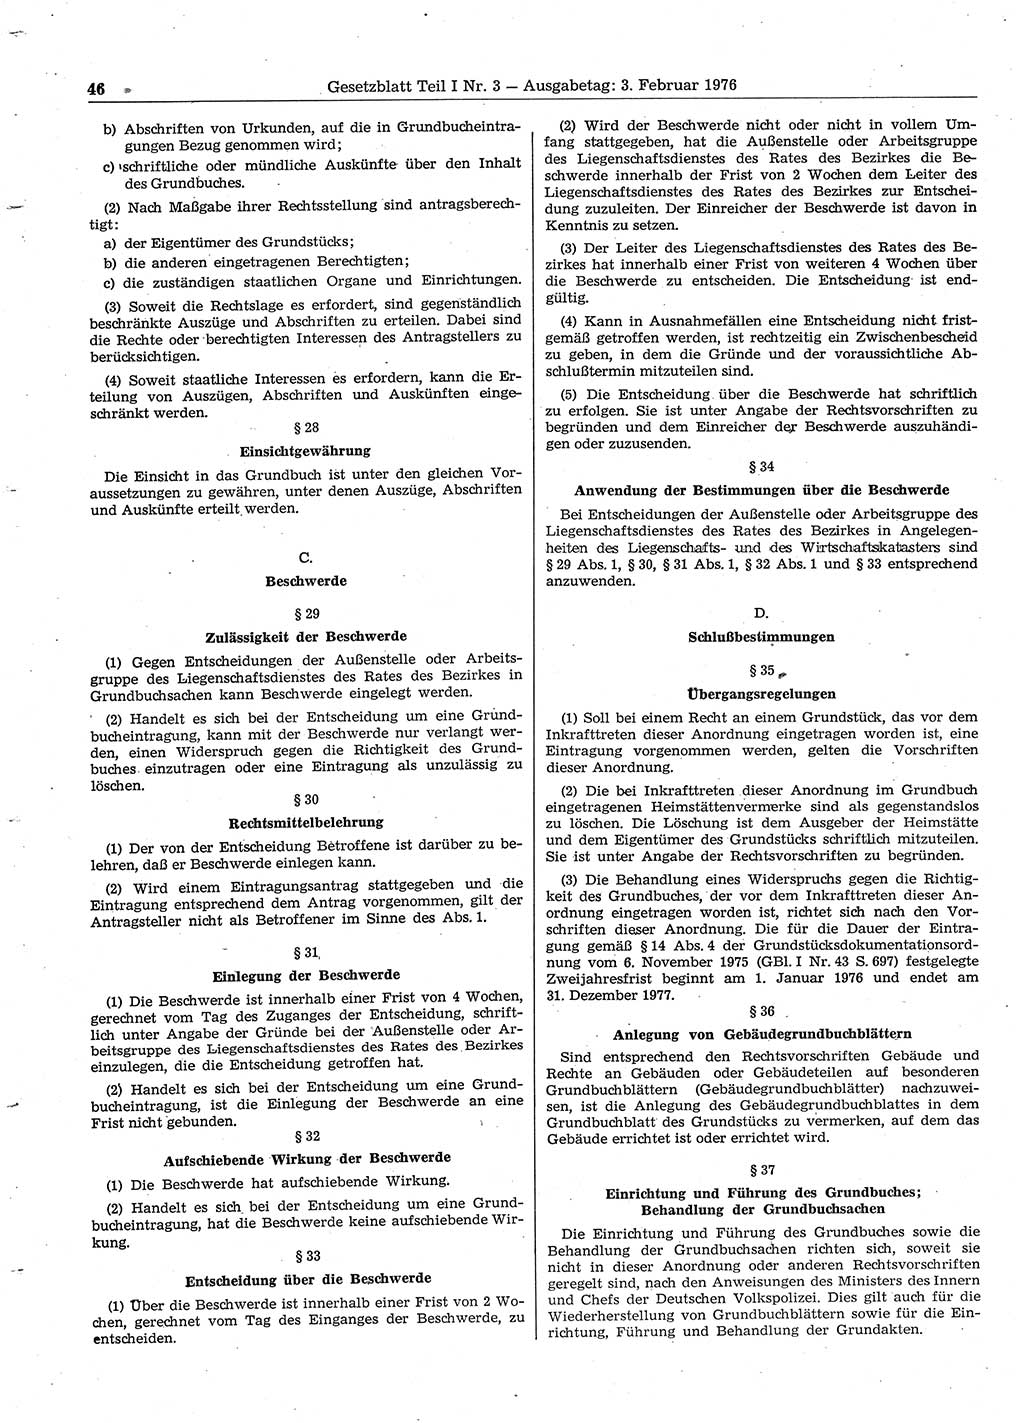 Gesetzblatt (GBl.) der Deutschen Demokratischen Republik (DDR) Teil Ⅰ 1976, Seite 46 (GBl. DDR Ⅰ 1976, S. 46)